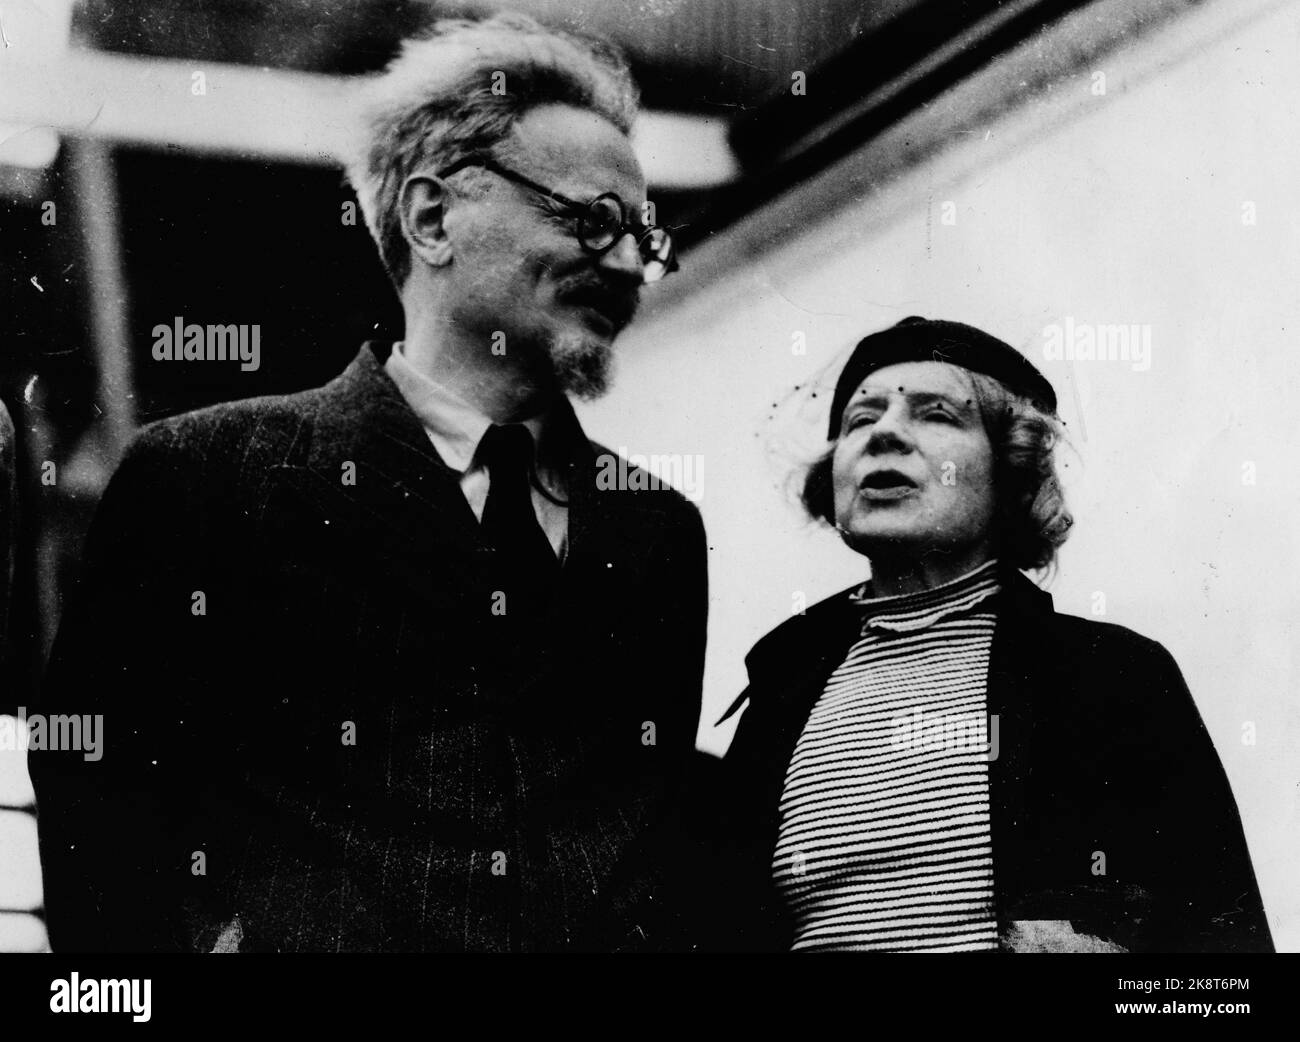 L'Atlantico 19370108. Leon Trotsky e sua moglie Natalia Sedova arrivarono pochi giorni dopo in Messico con la nave da carico norvegese 'Ruth'. Qui Trotsky era stato dato asilo dopo il suo esilio in Norvegia. Nel 1940 fu ucciso da agenti. Il politico Leon Trotsky / Lev Trotsky era rimasto in Norvegia nell'estate del 1936. In agosto doveva comparire in tribunale. Il processo si è concluso con l'espulsione dalla Norvegia a causa di. Attività politica illegale. Foto: NTB / NTB Foto Stock